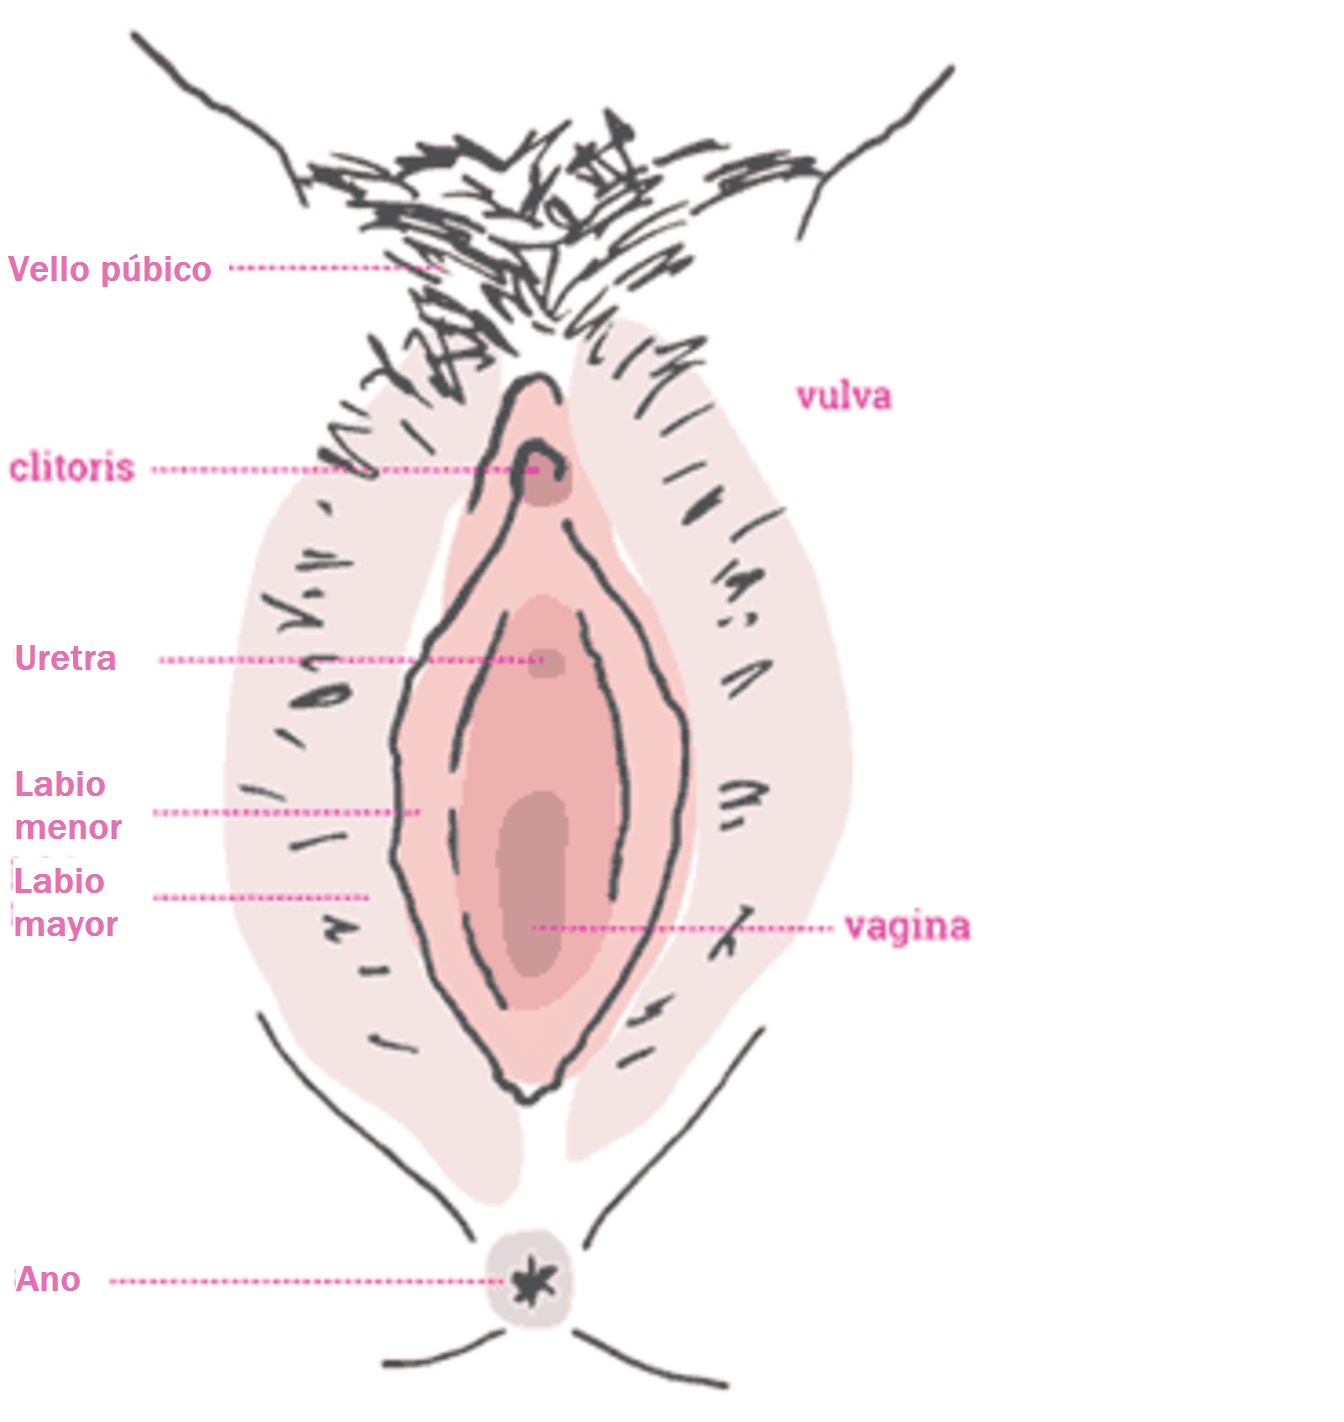 vulvodinia dolor vulvar en la vulva